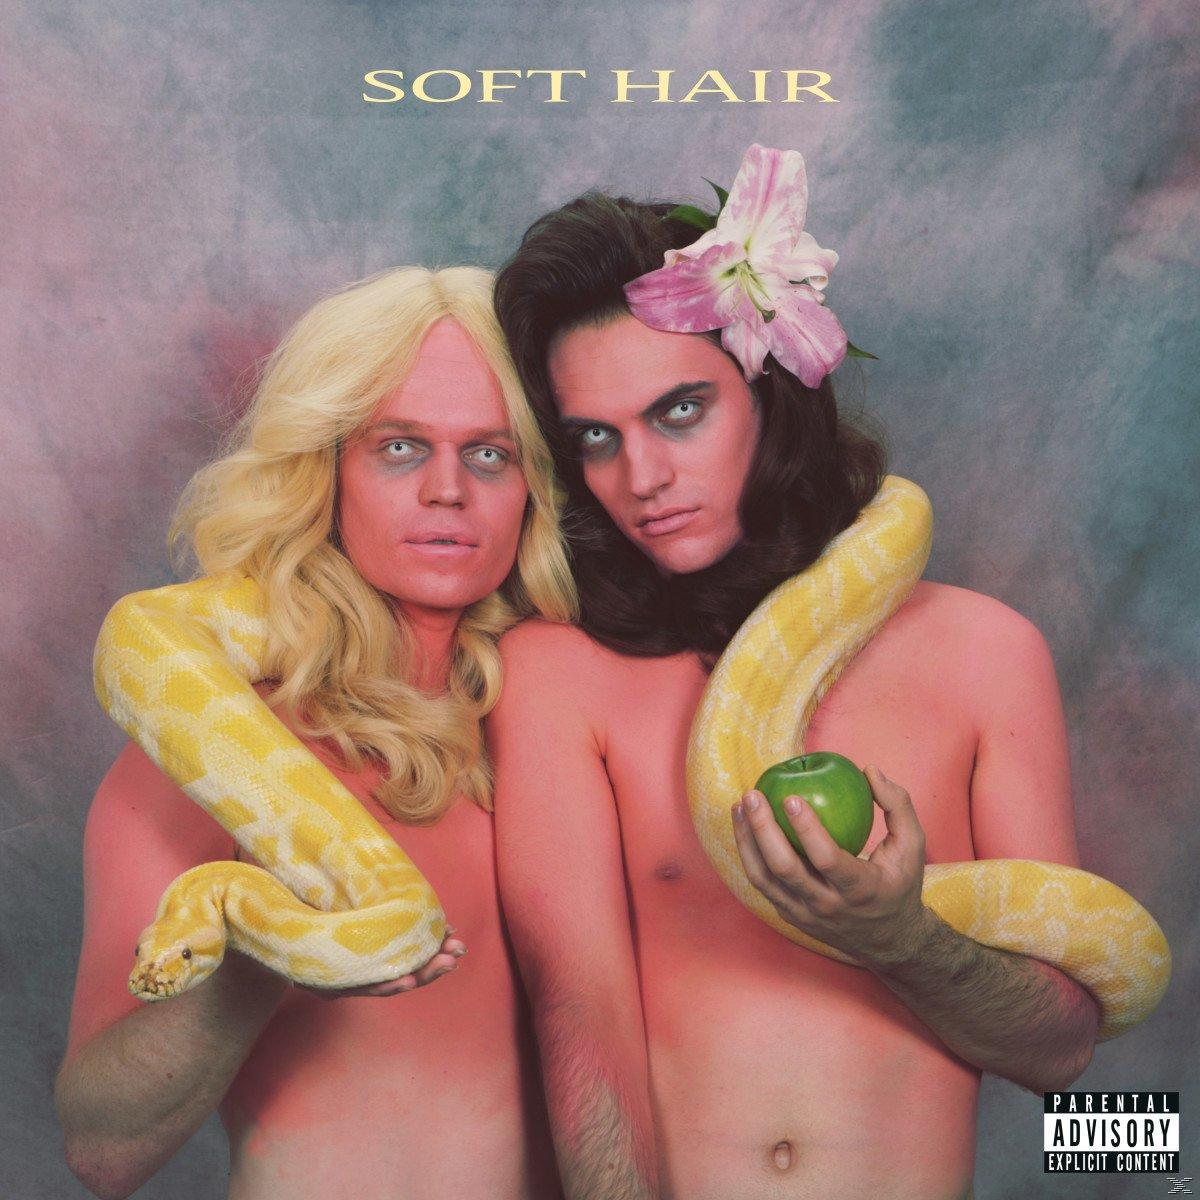 Soft Hair + - (LP Hair (LP+MP3) - Download) Soft